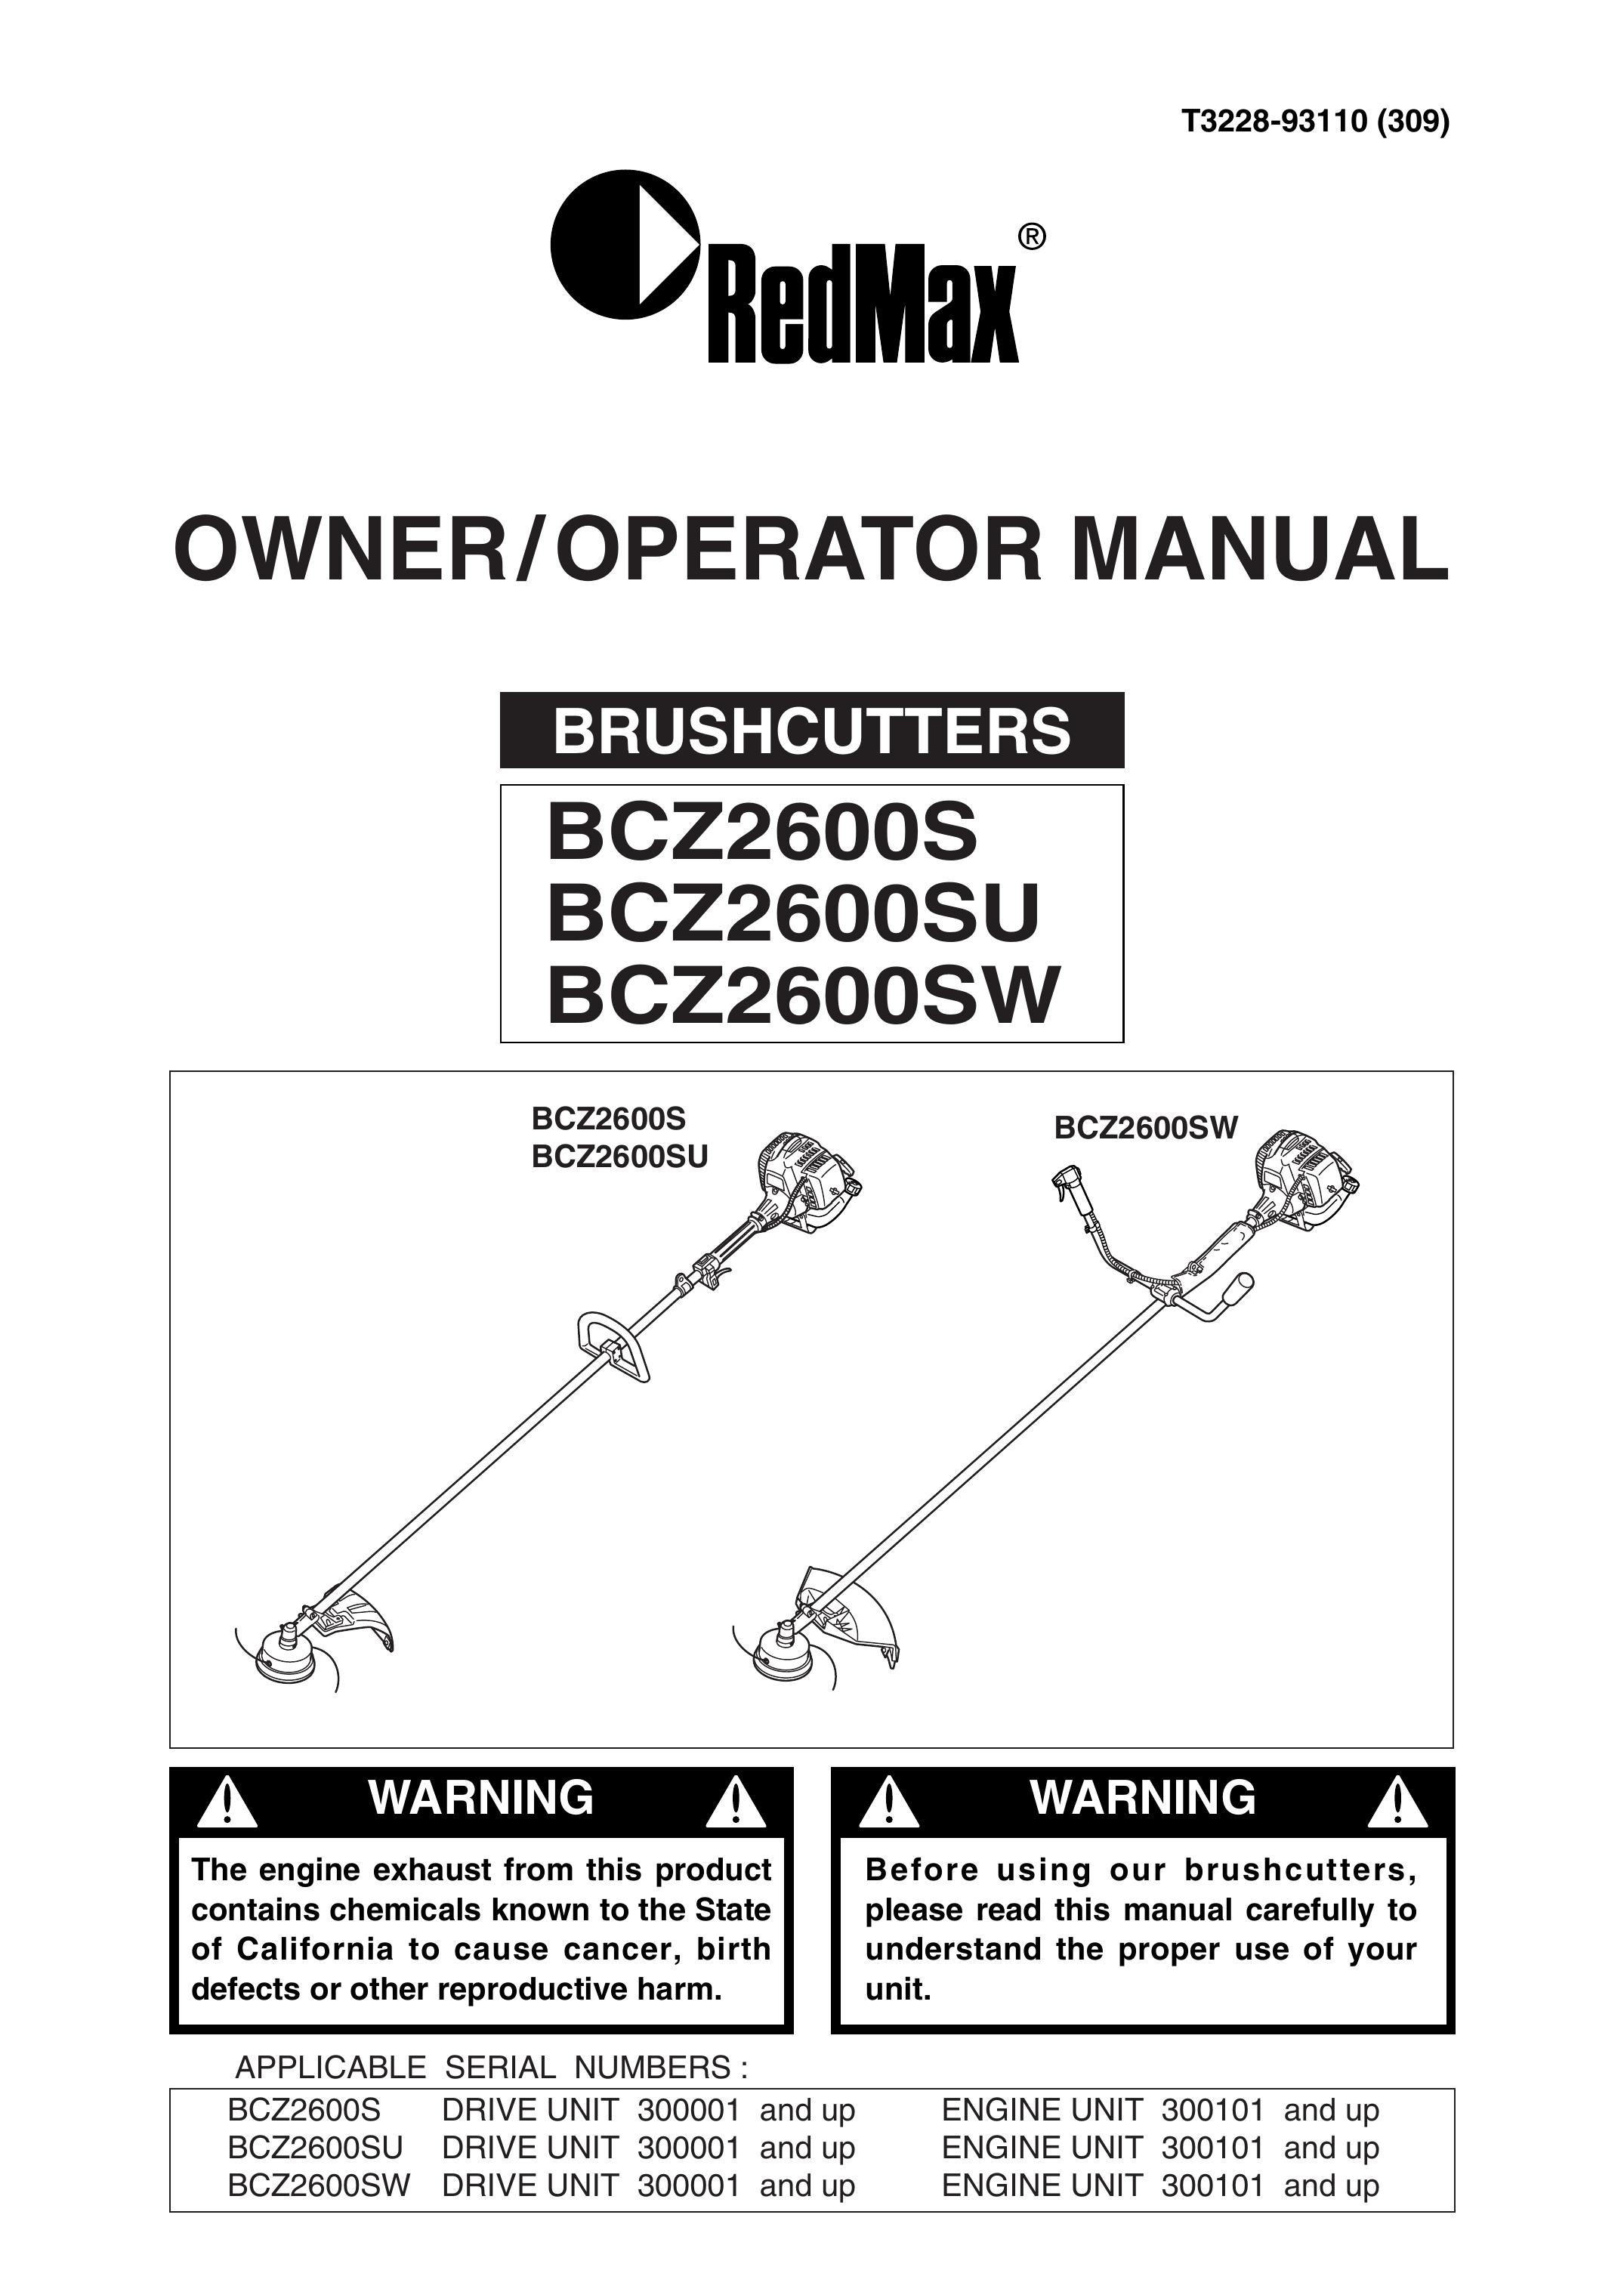 RedMax BCZ2600S Brush Cutter User Manual